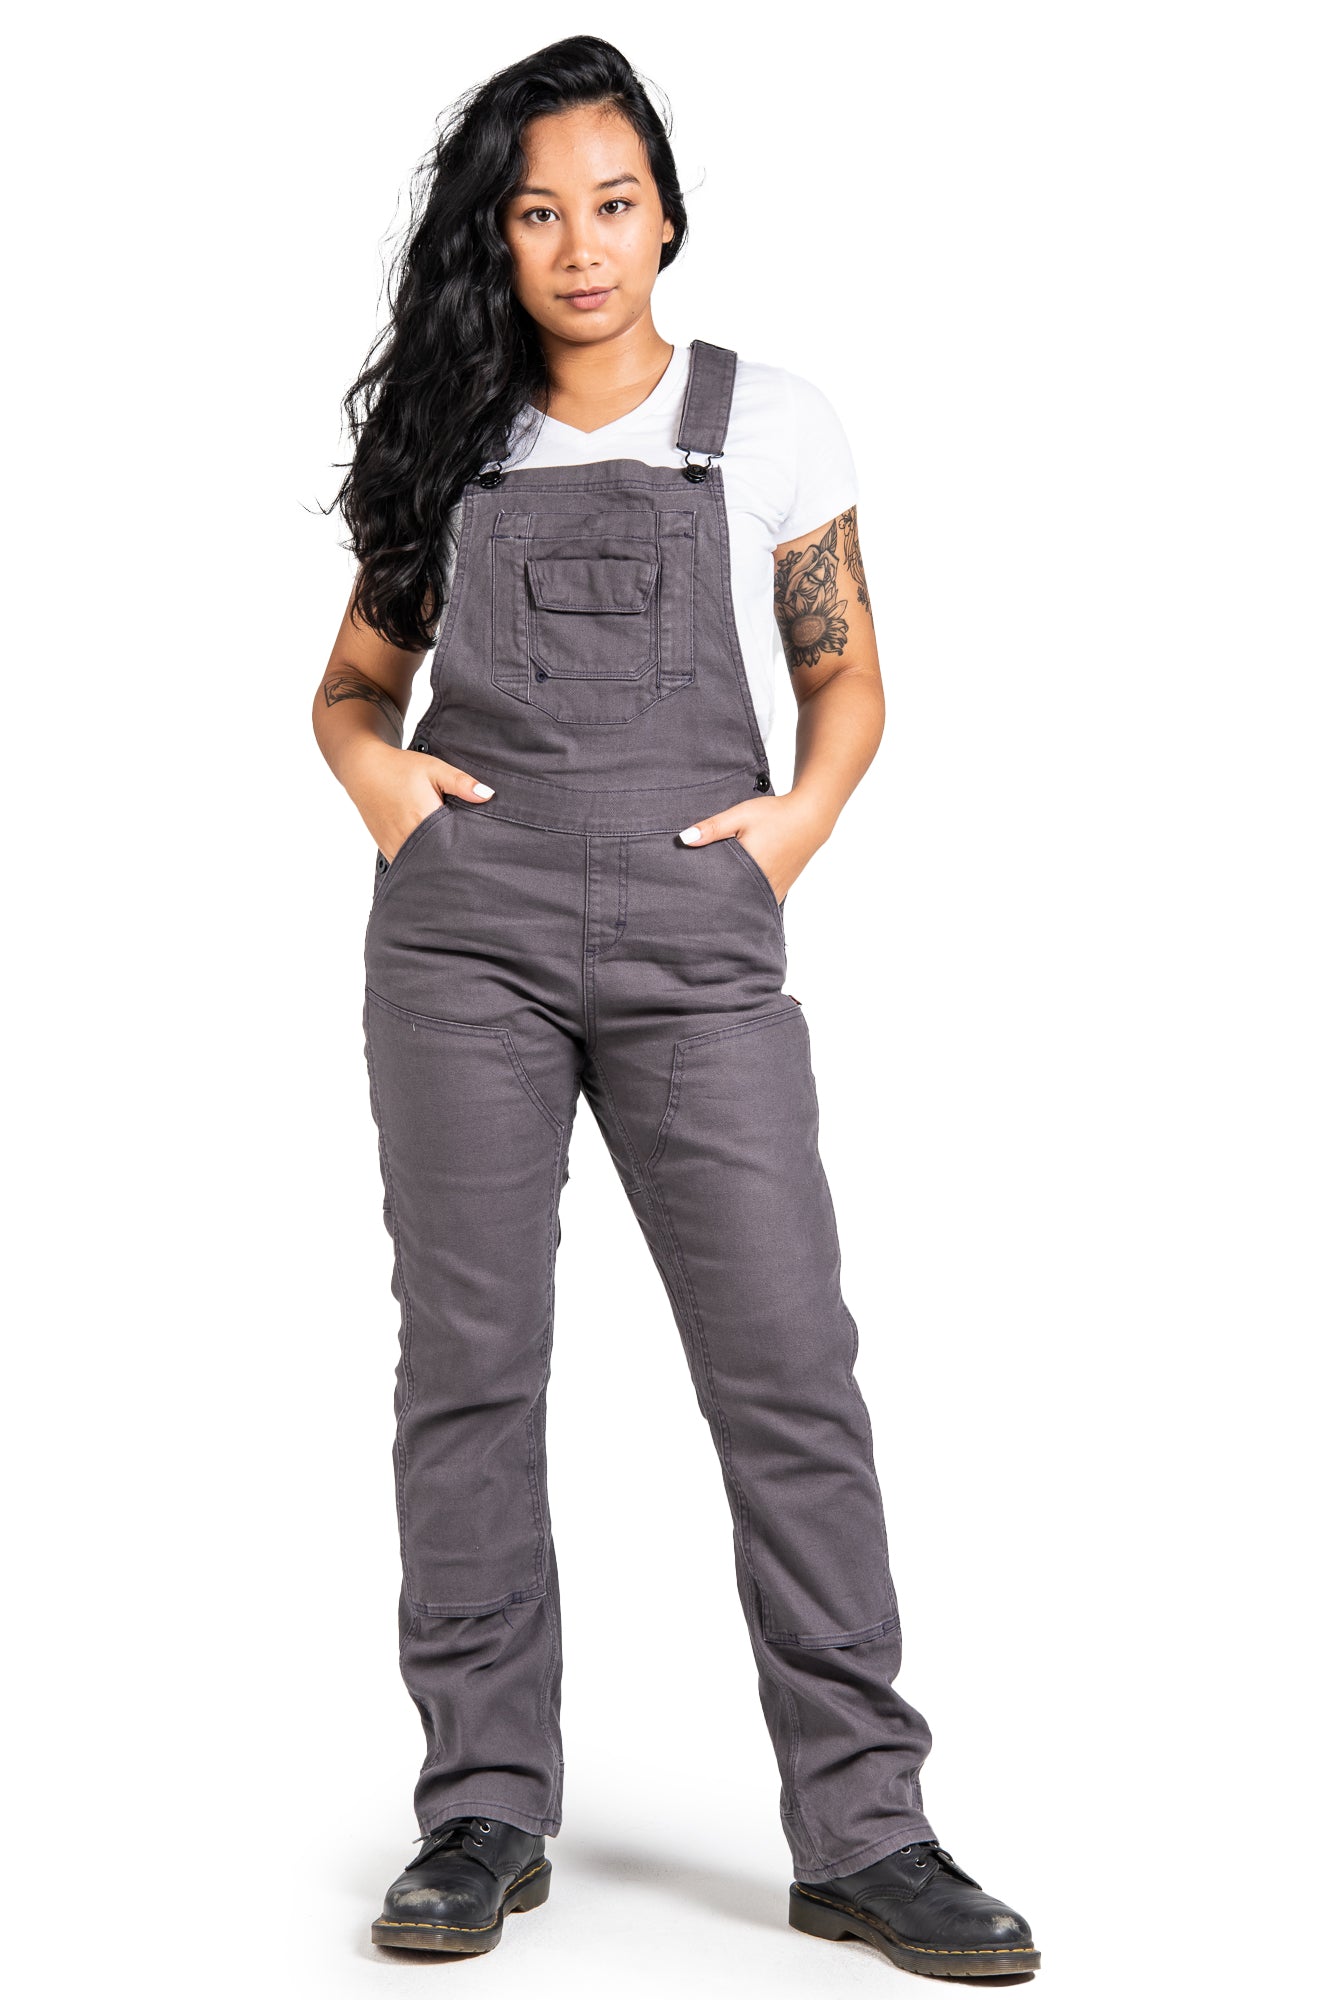 Dovetail Workwear Women's Freshly Overall_Dark Grey - Work World - Workwear, Work Boots, Safety Gear